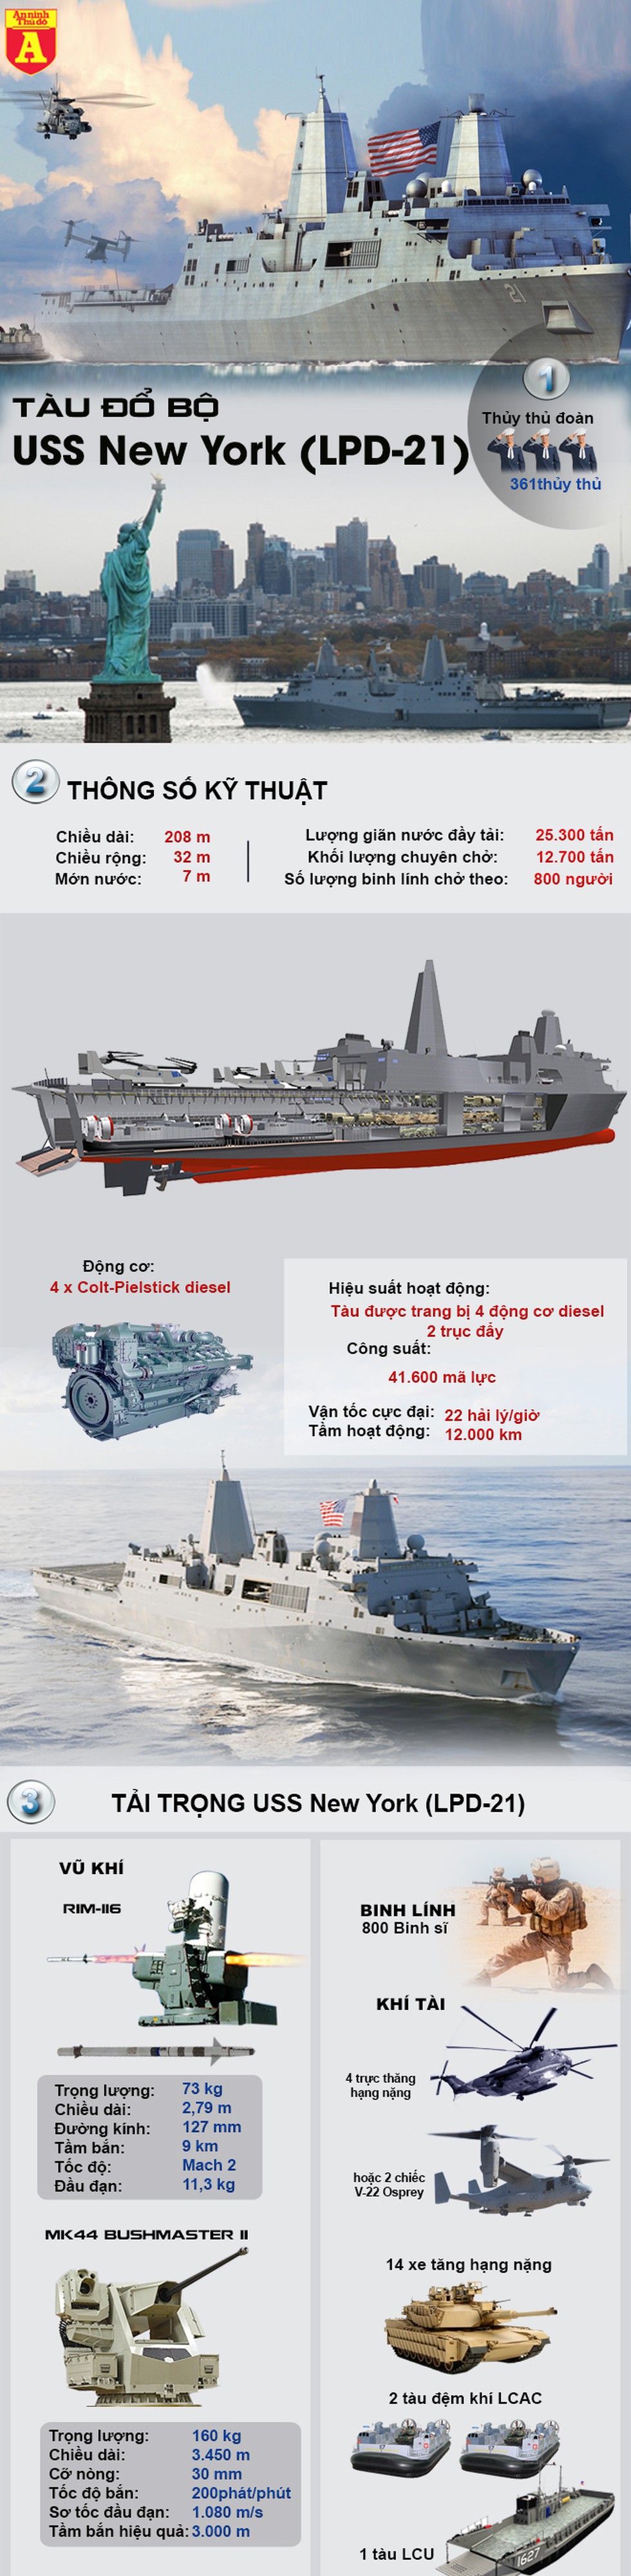 [Infographic] 7,5 tấn thép từ tòa tháp đôi vụ khủng bố 11-9 đã được dùng để chế tạo siêu chiến hạm này - Ảnh 1